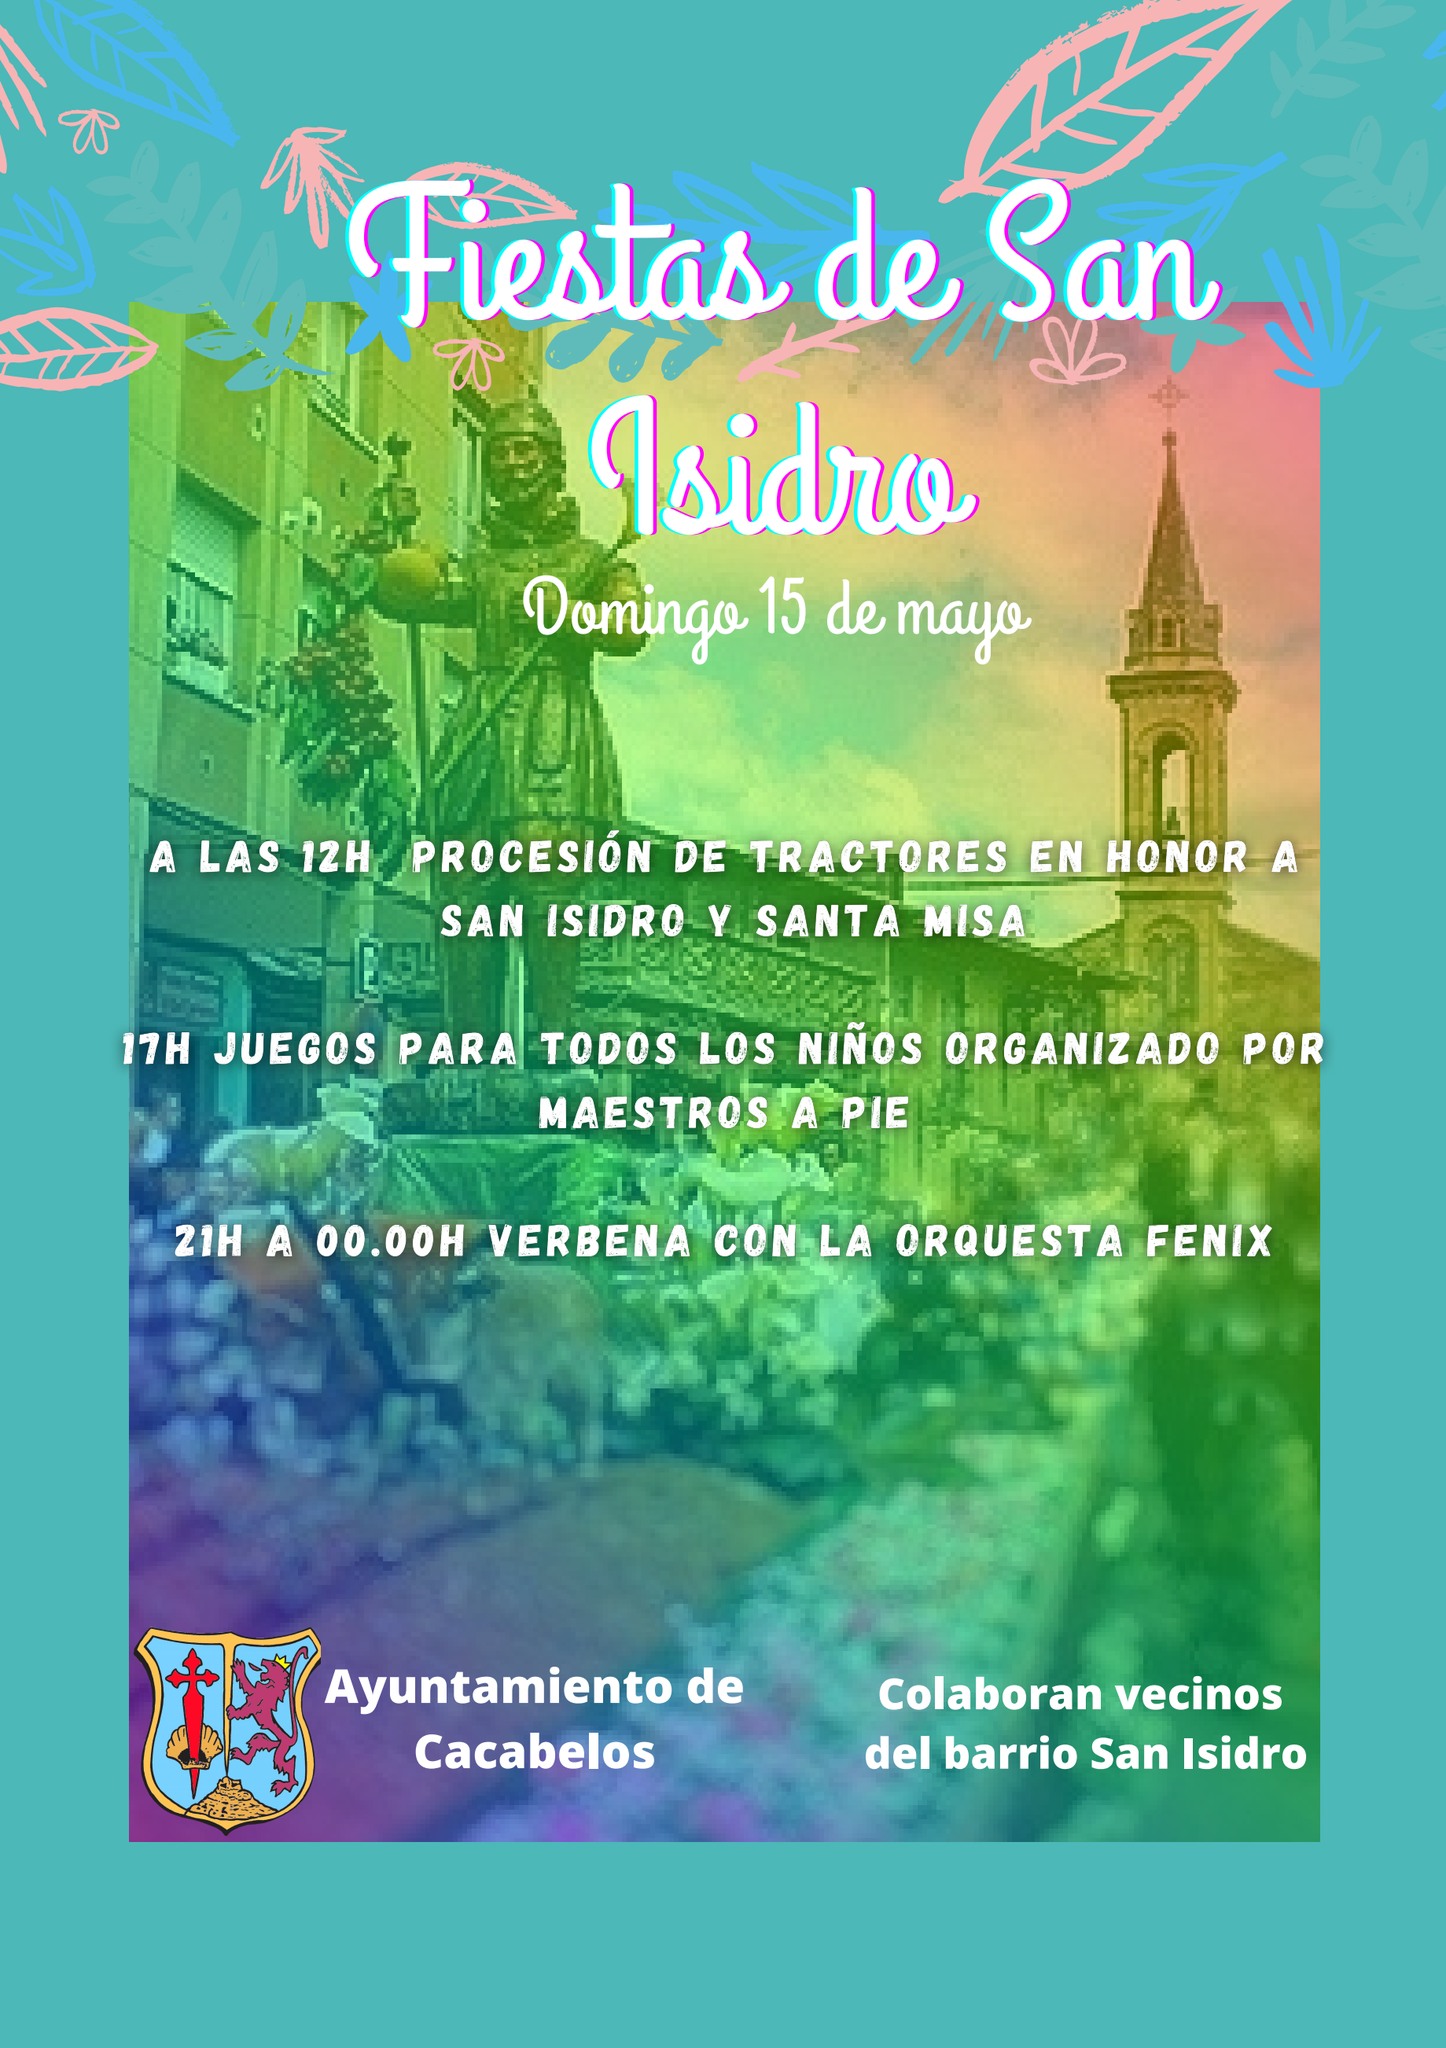 Fiestas del barrio de San Isidro en Cacabelos. Domingo 15 de mayo. Programa de actividades 2